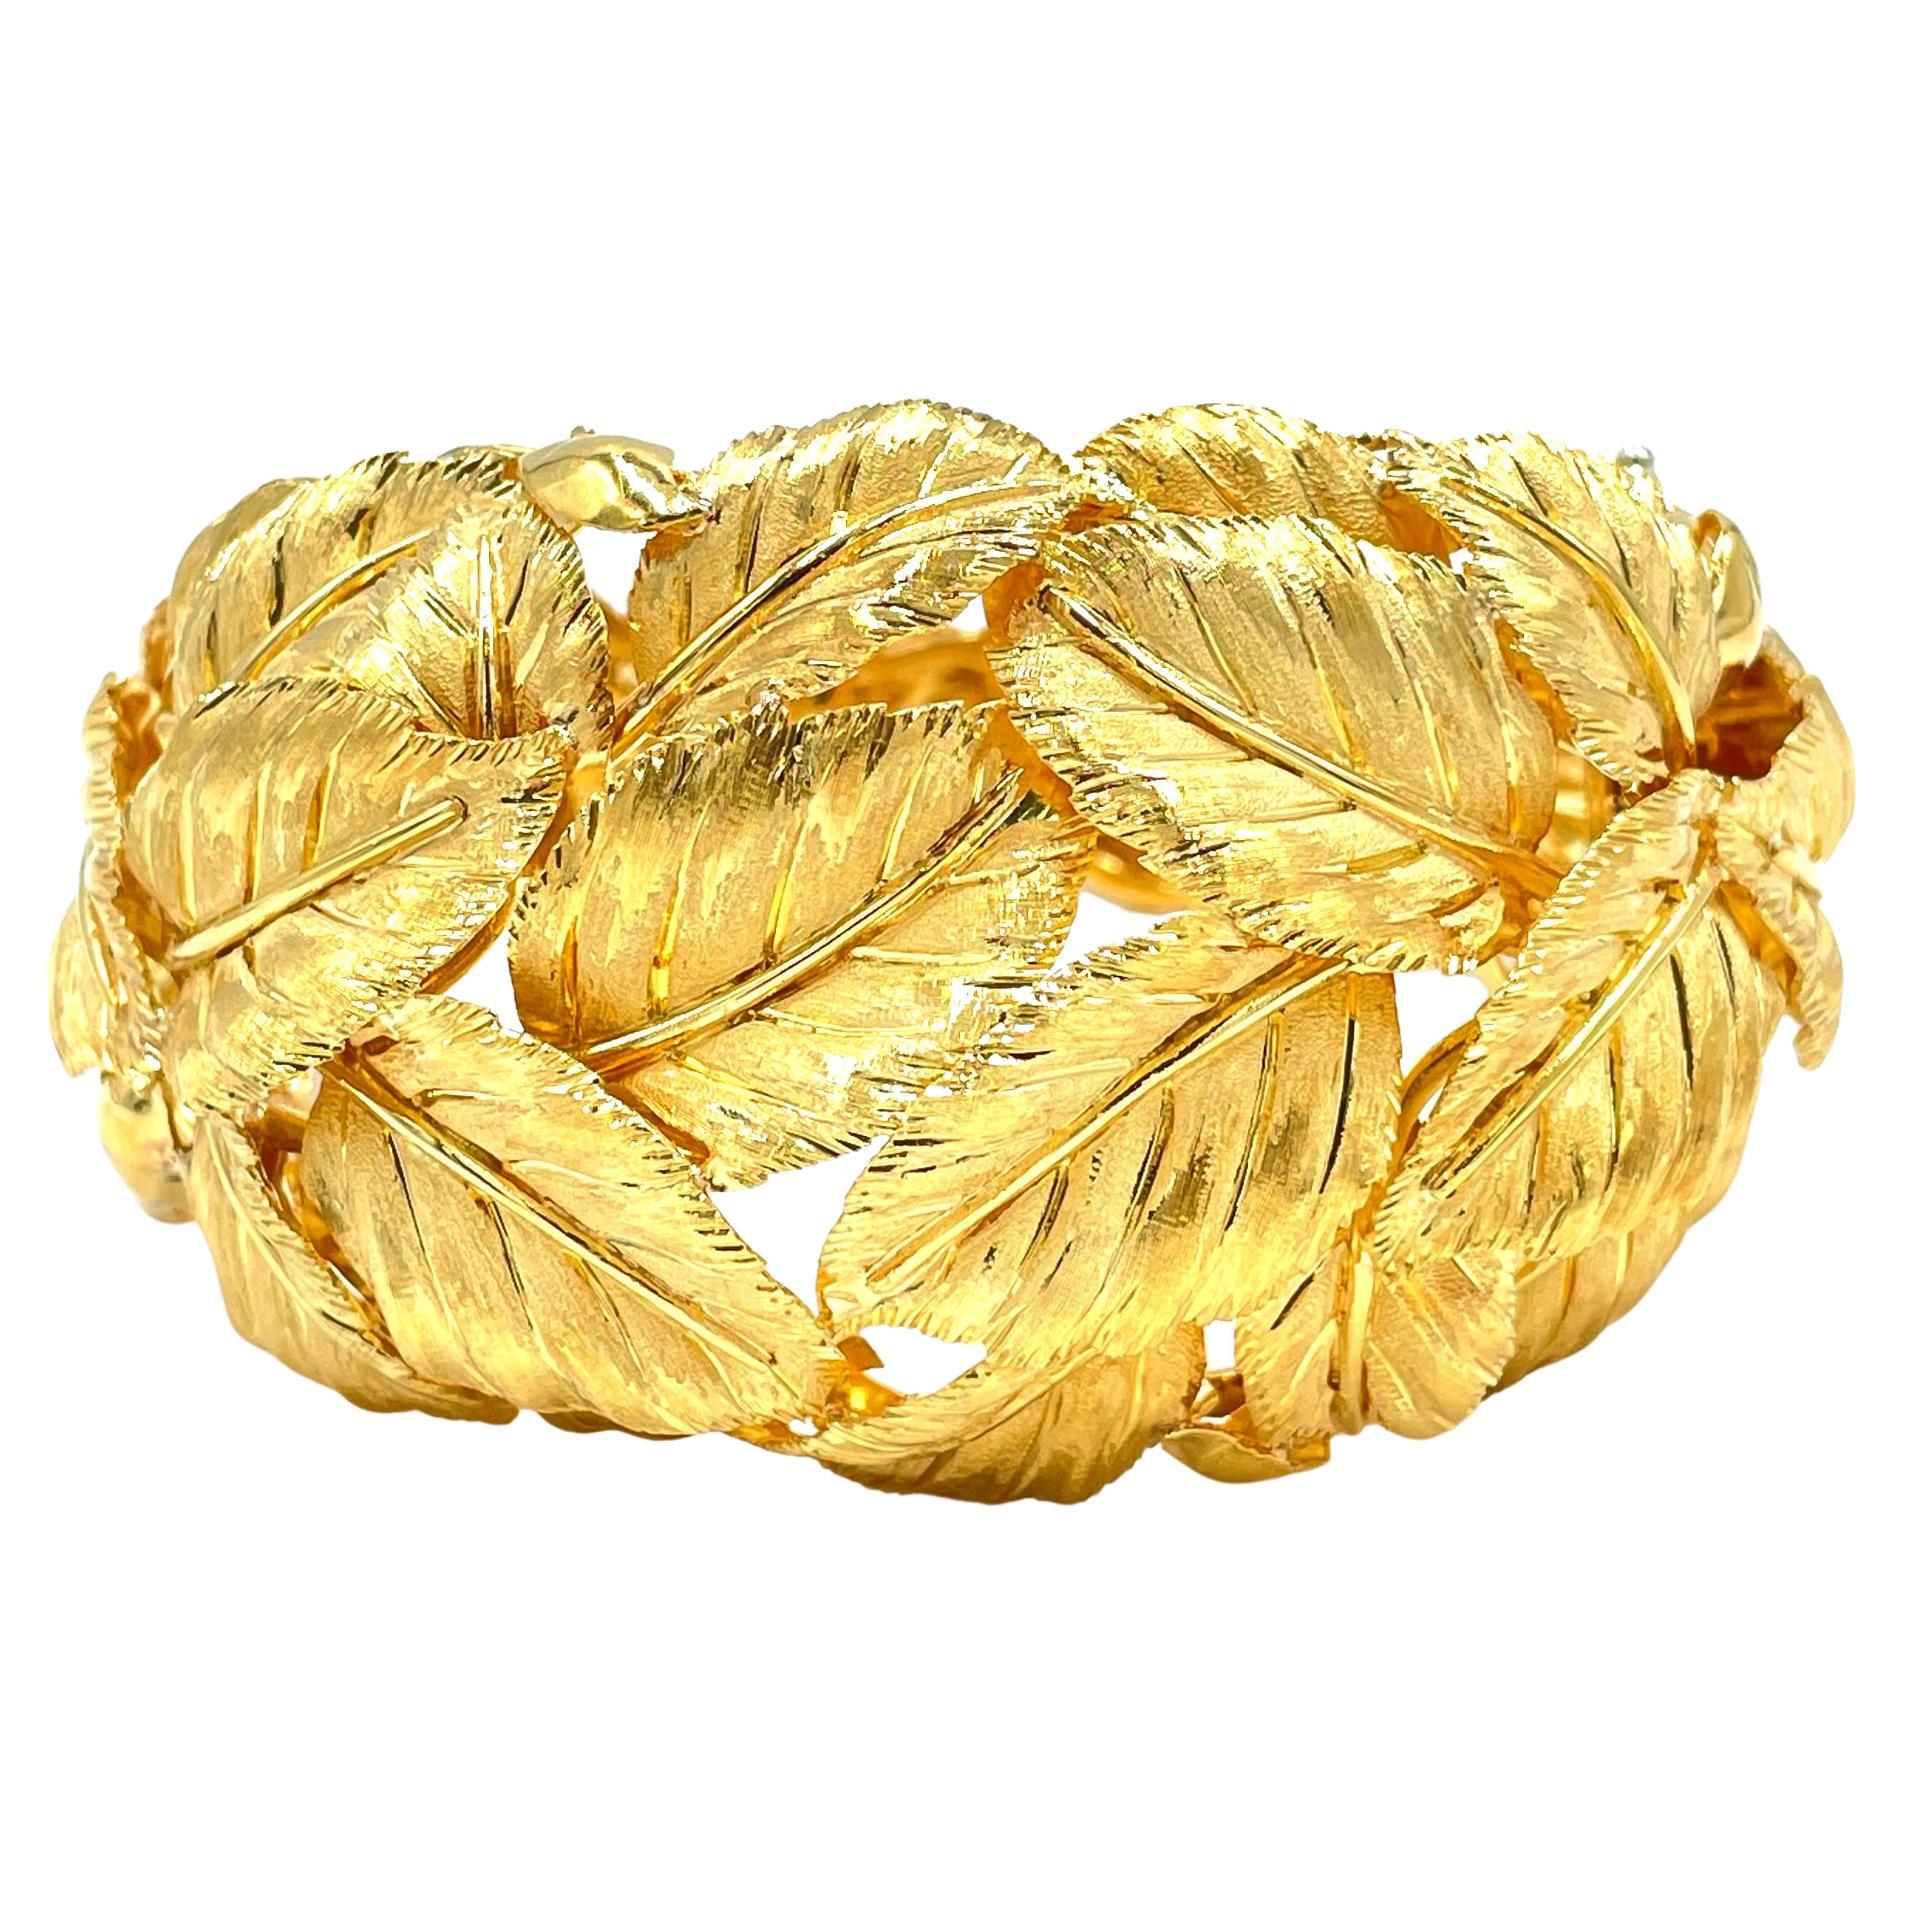 Unique en son genre, bracelet bangle italien vintage fait à la main avec des feuilles travaillées à la main.  Les feuilles sont magnifiquement travaillées à la main dans les moindres détails. Le bracelet est solide et mesure environ 44 mm dans sa